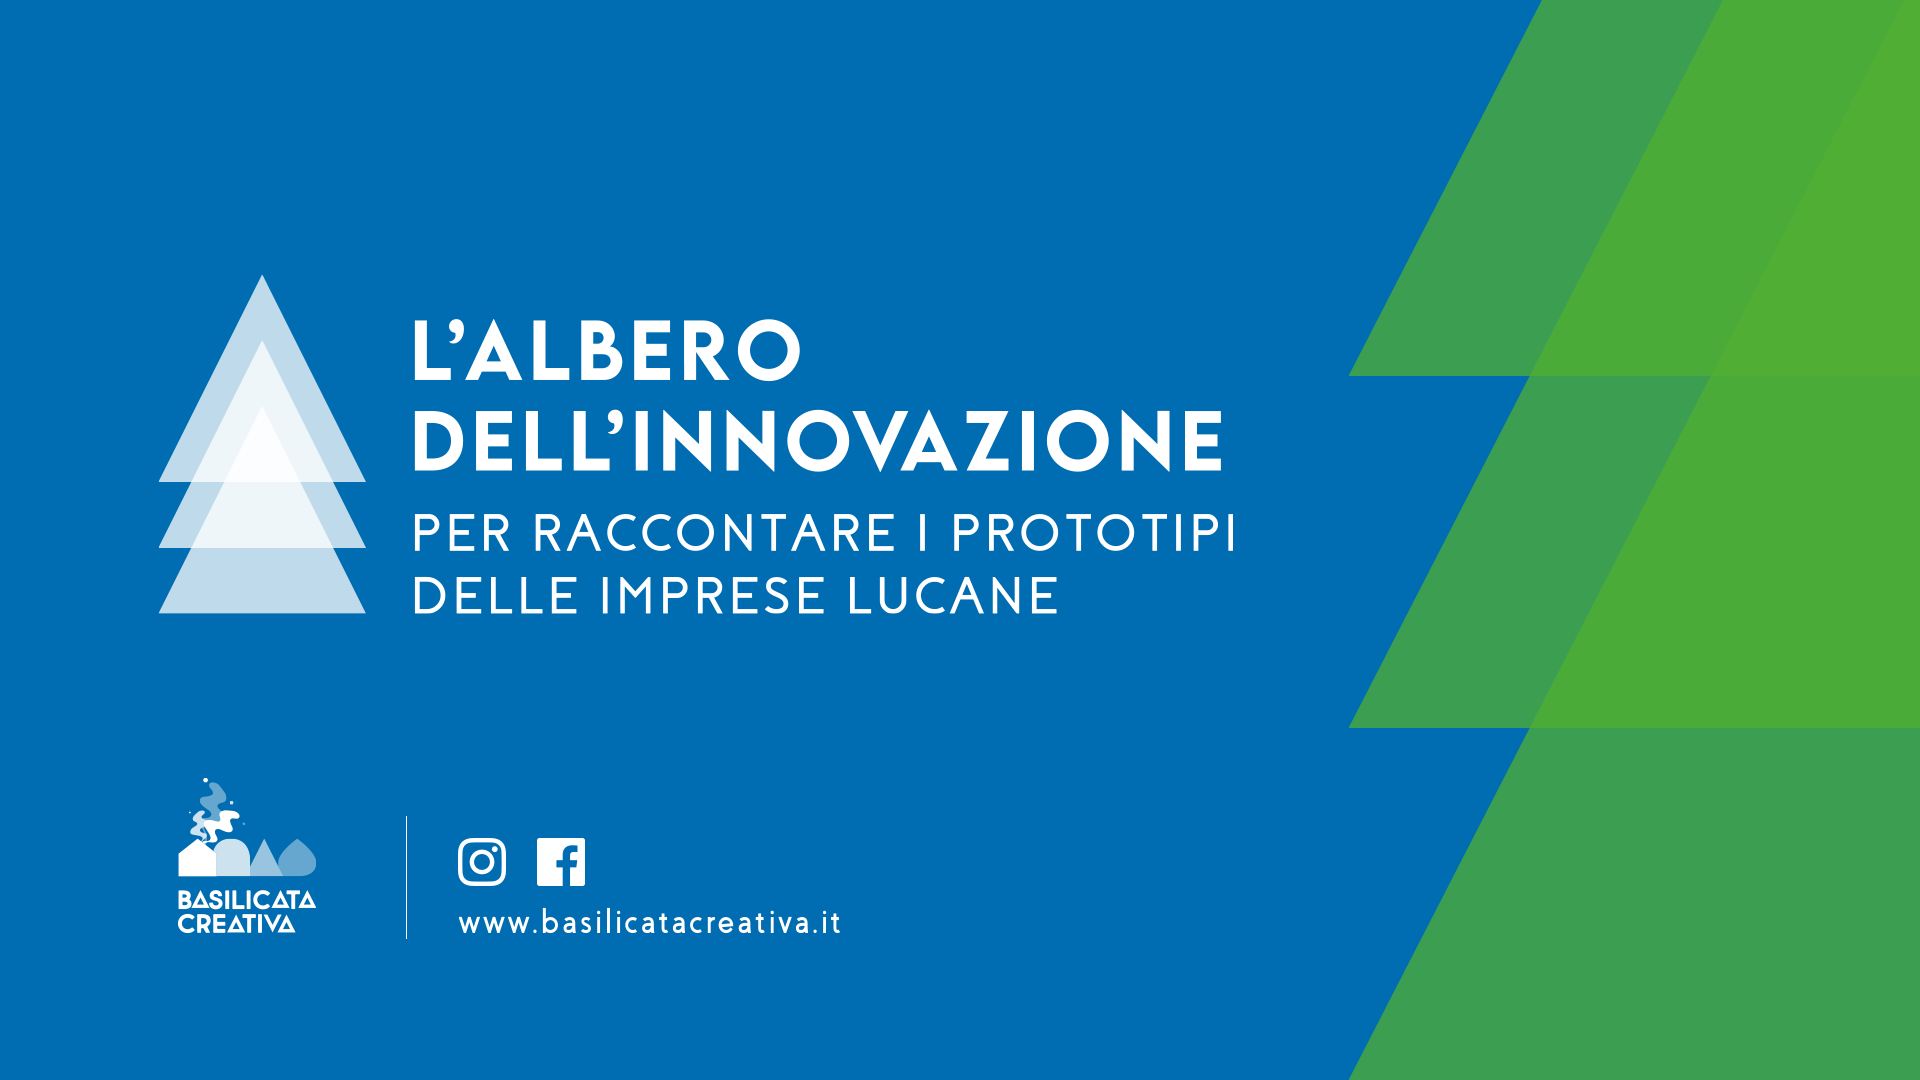 L’albero dell’Innovazione, proposta natalizia di Basilicata Creativa per presentare prototipi e progetti innovativi delle eccellenze imprenditoriali lucane